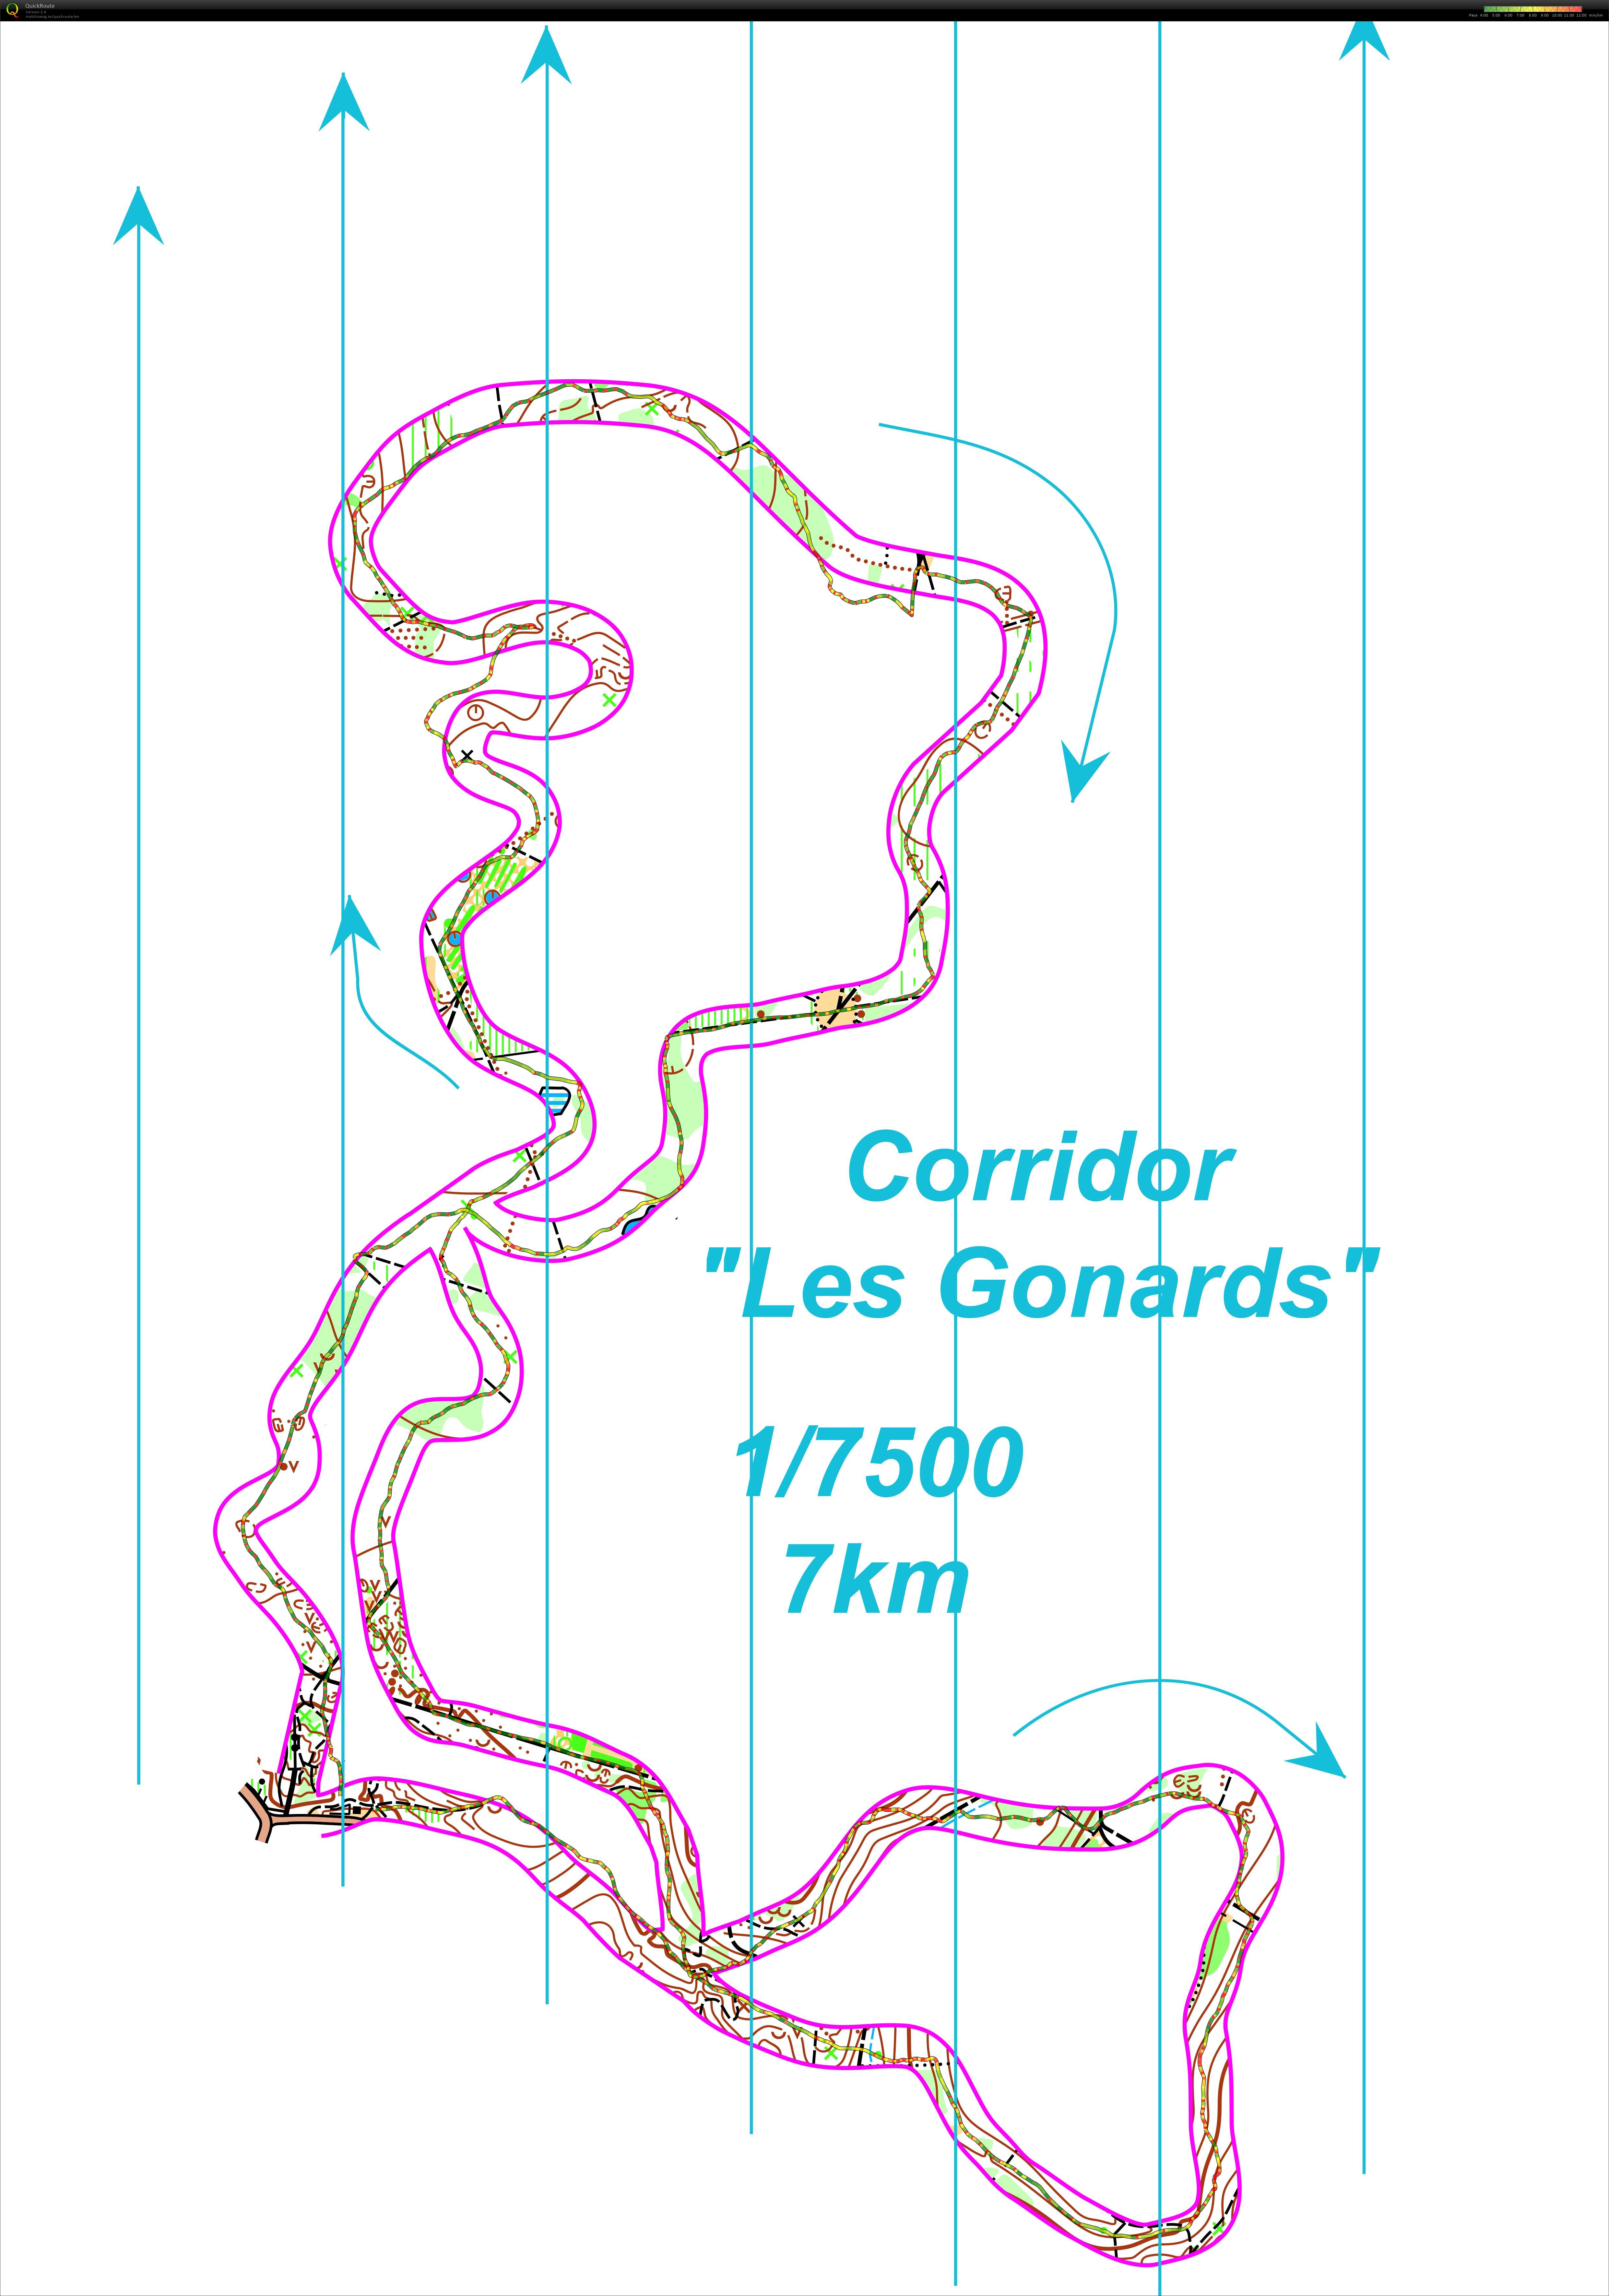 Corridor gonards  (29-11-2017)